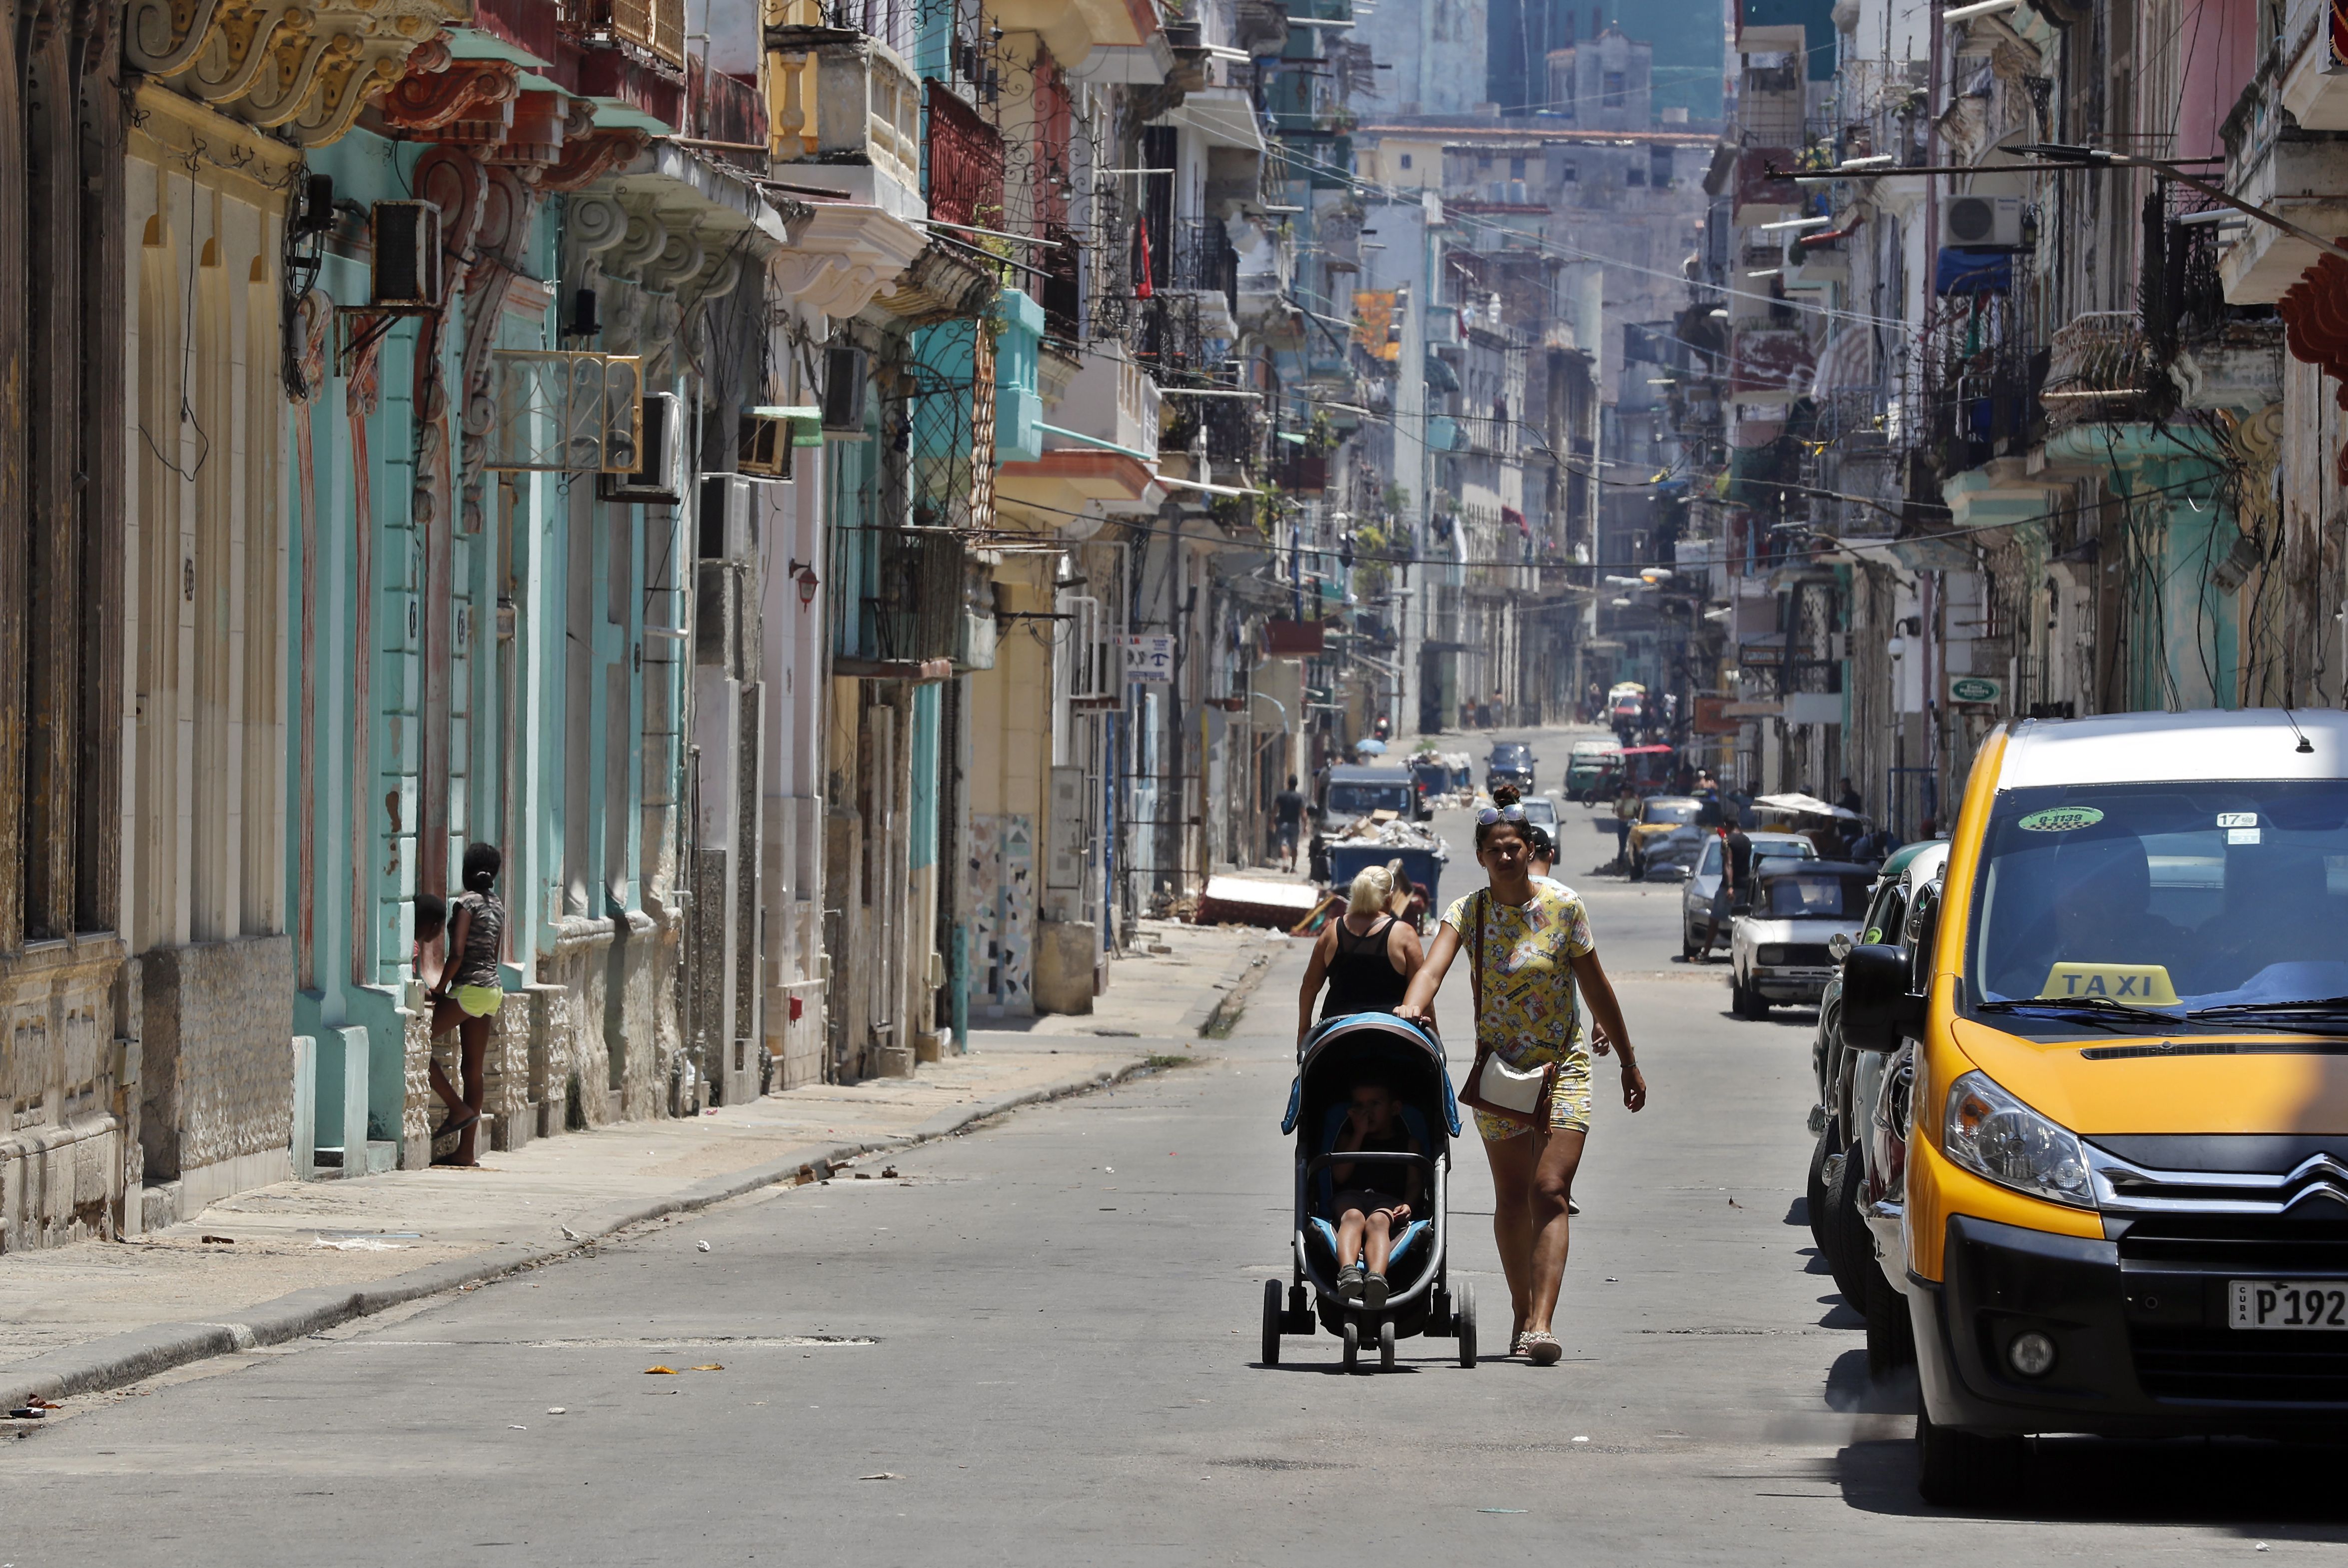 La Habana vivió la jornada más calurosa en más de 100 años